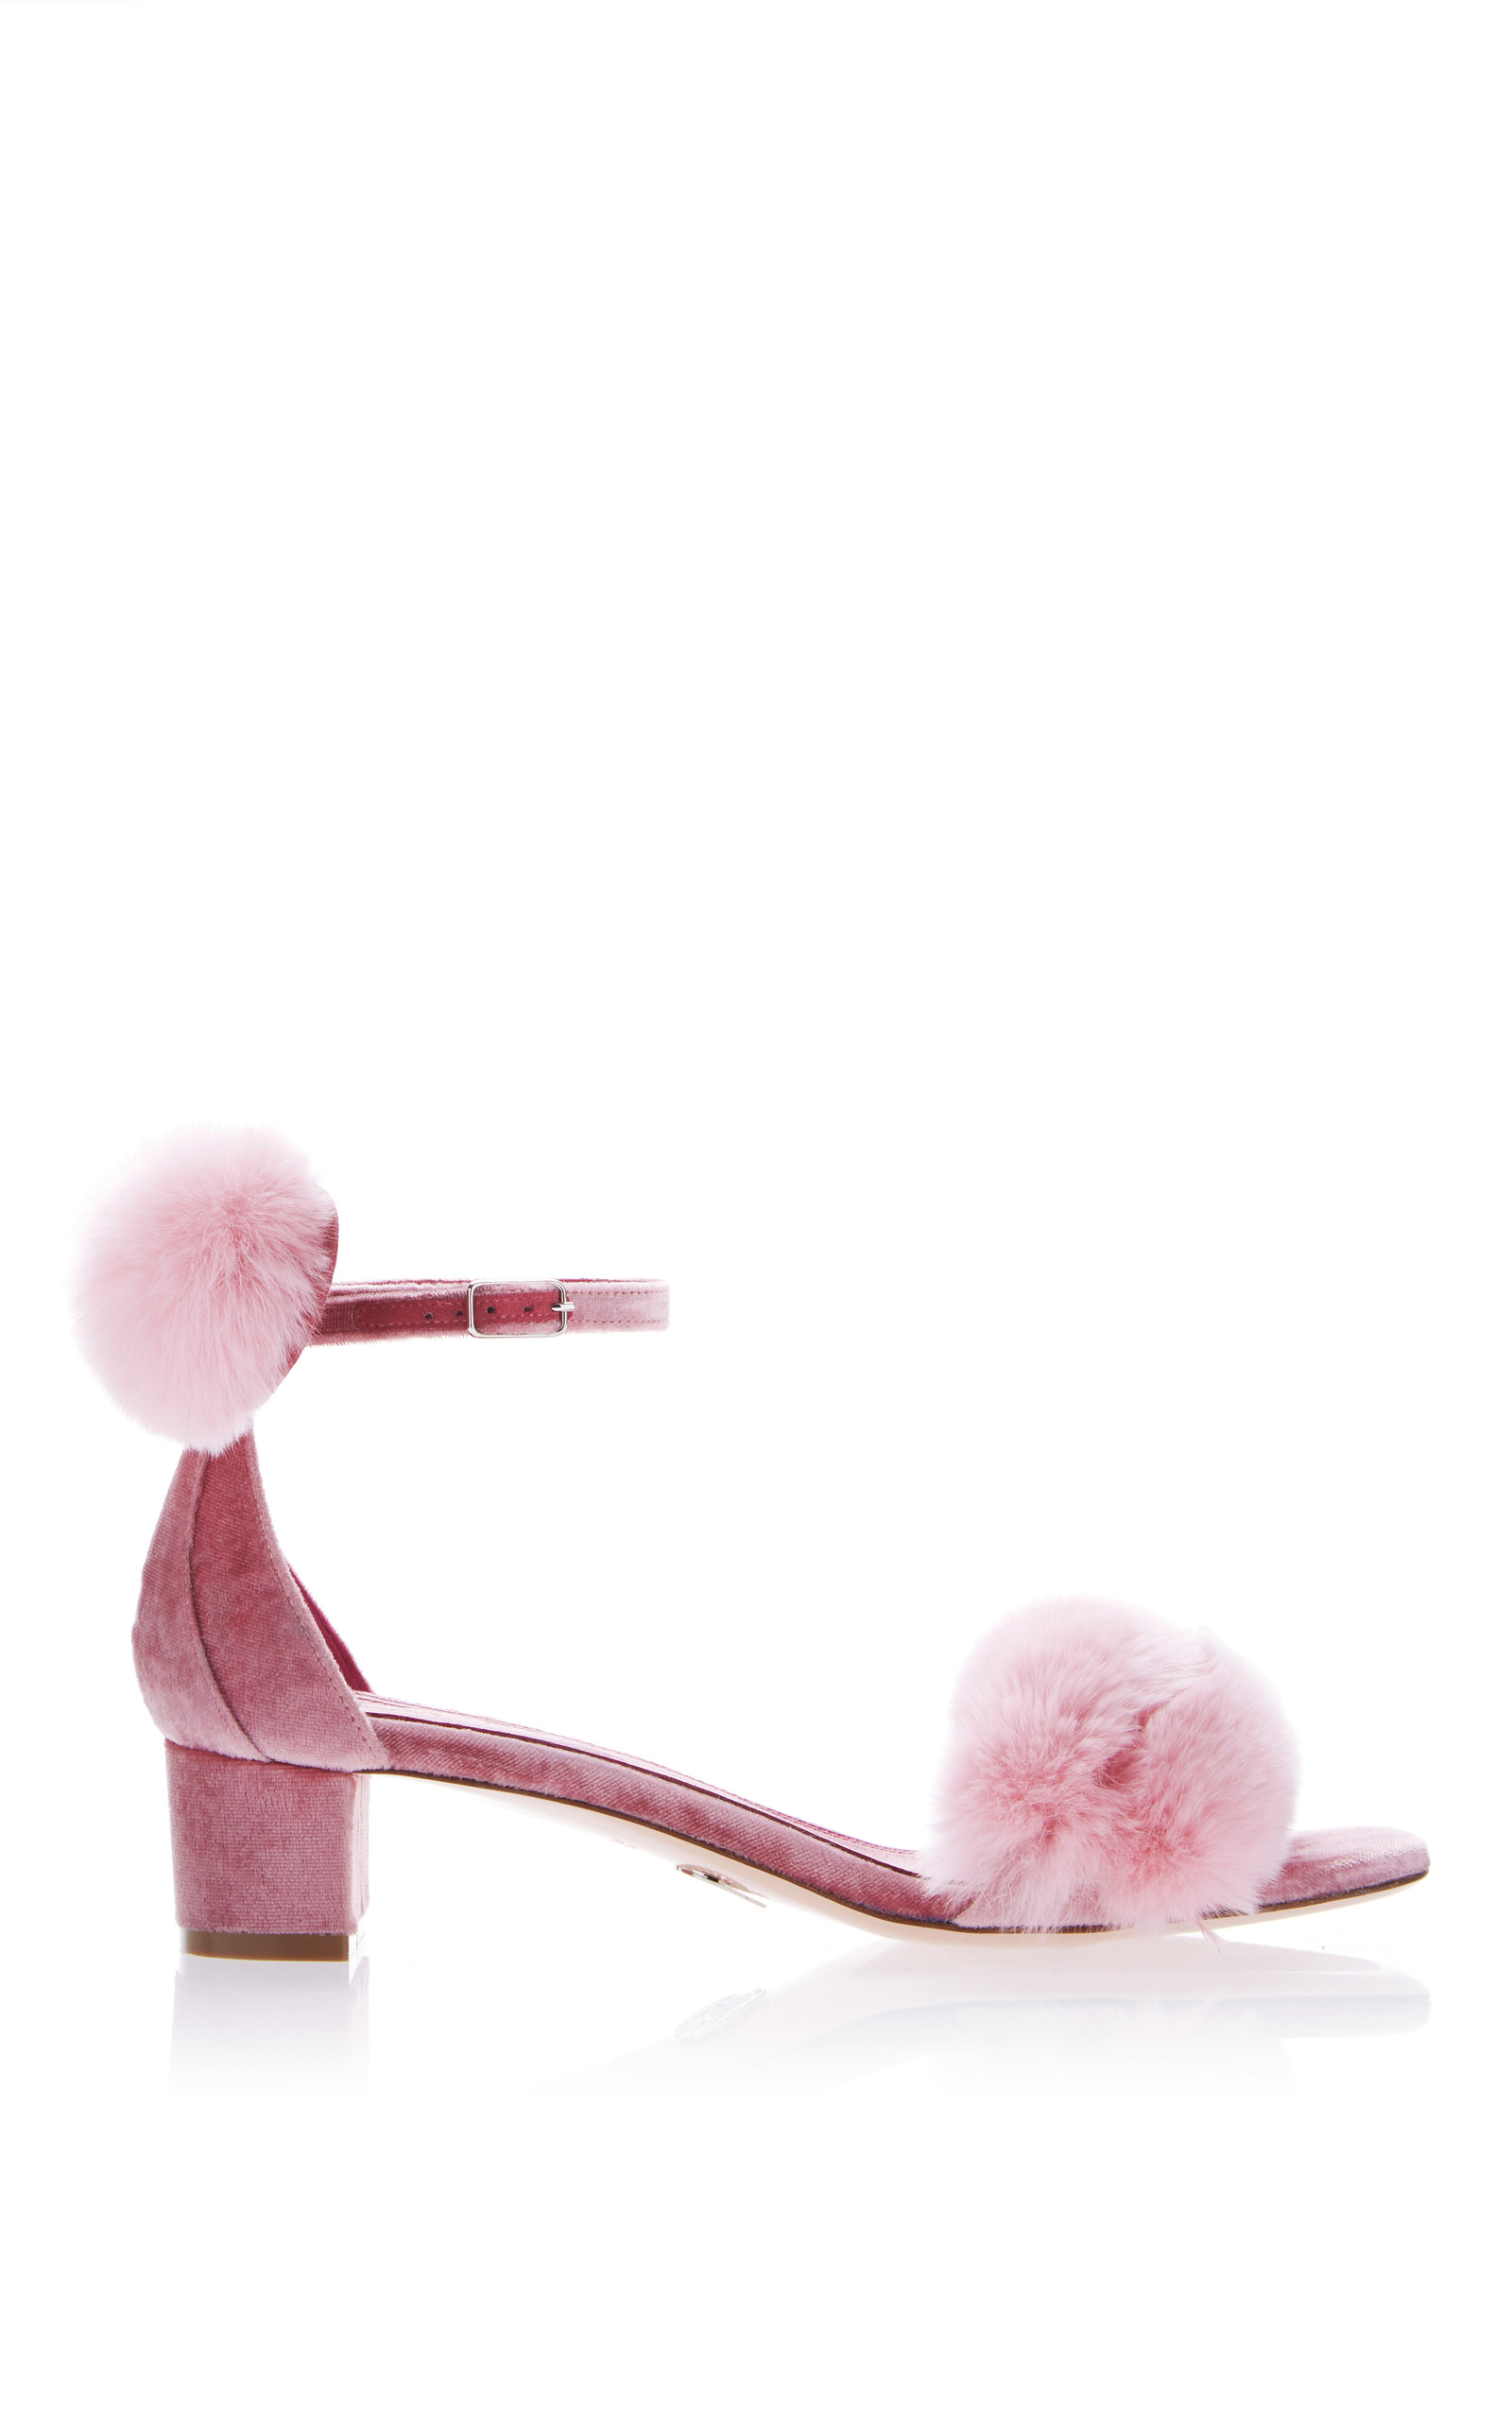 large_oscar-tiye-pink-minnie-fur-sandal.jpg